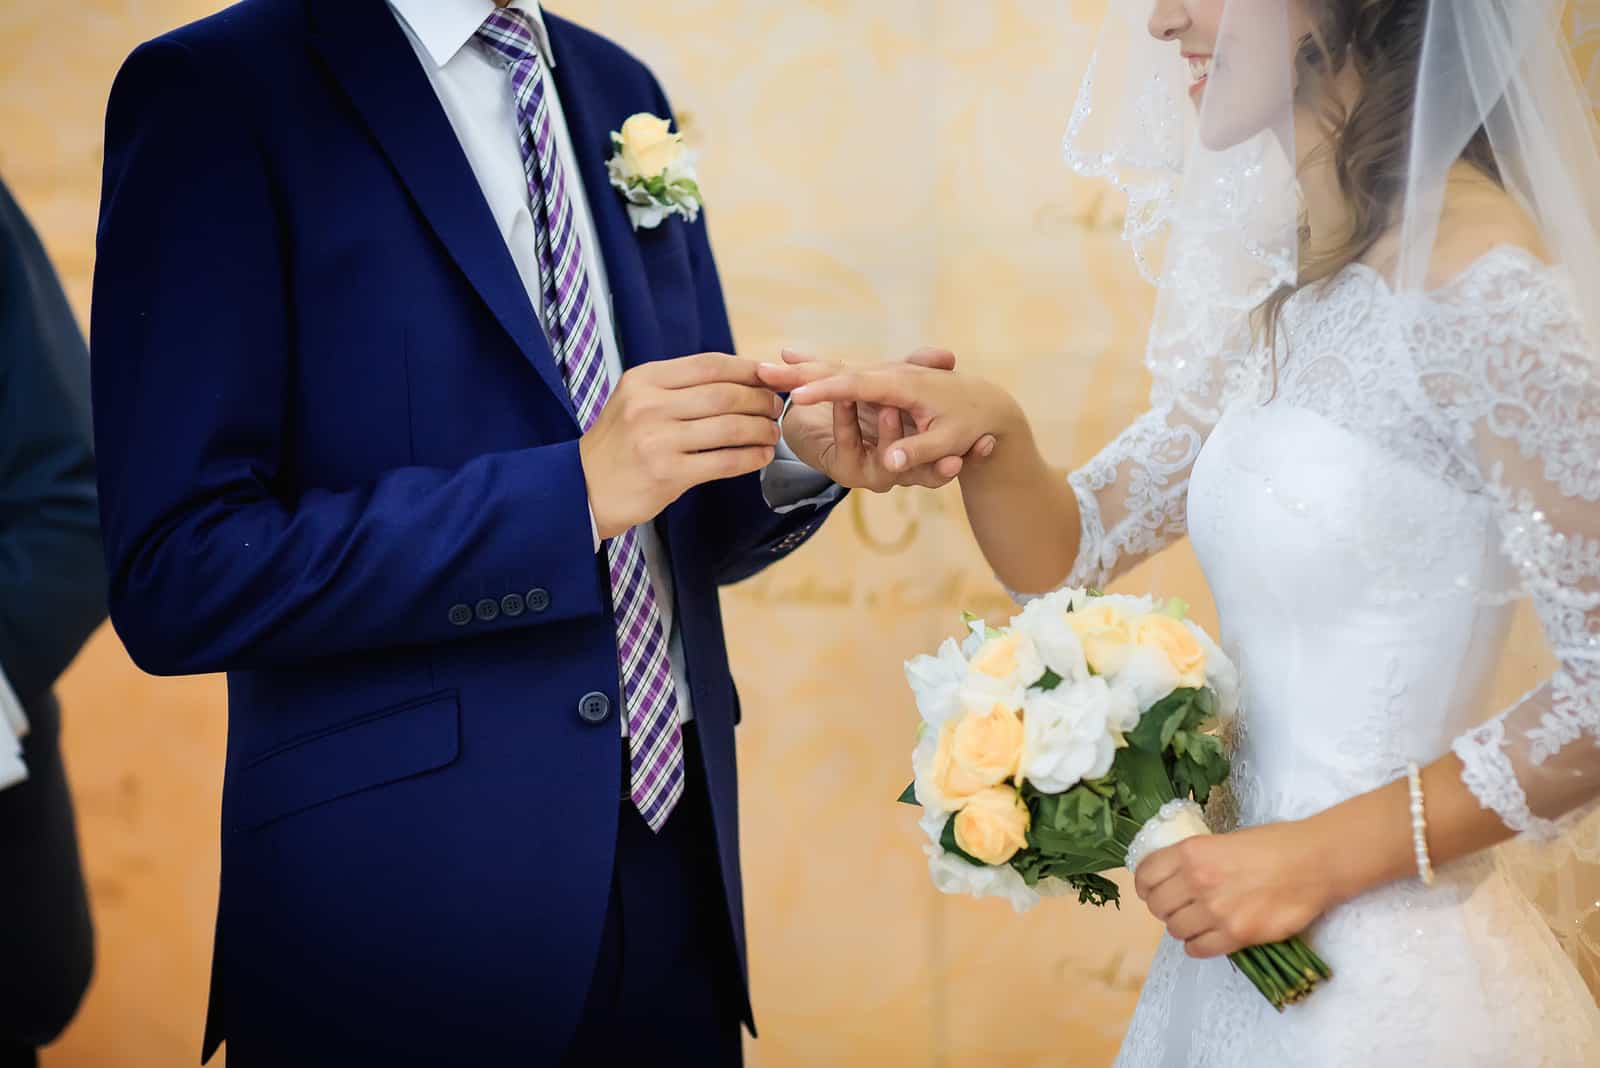 Der berührende Moment des Austauschs von Eheringen ist frisch verheiratet